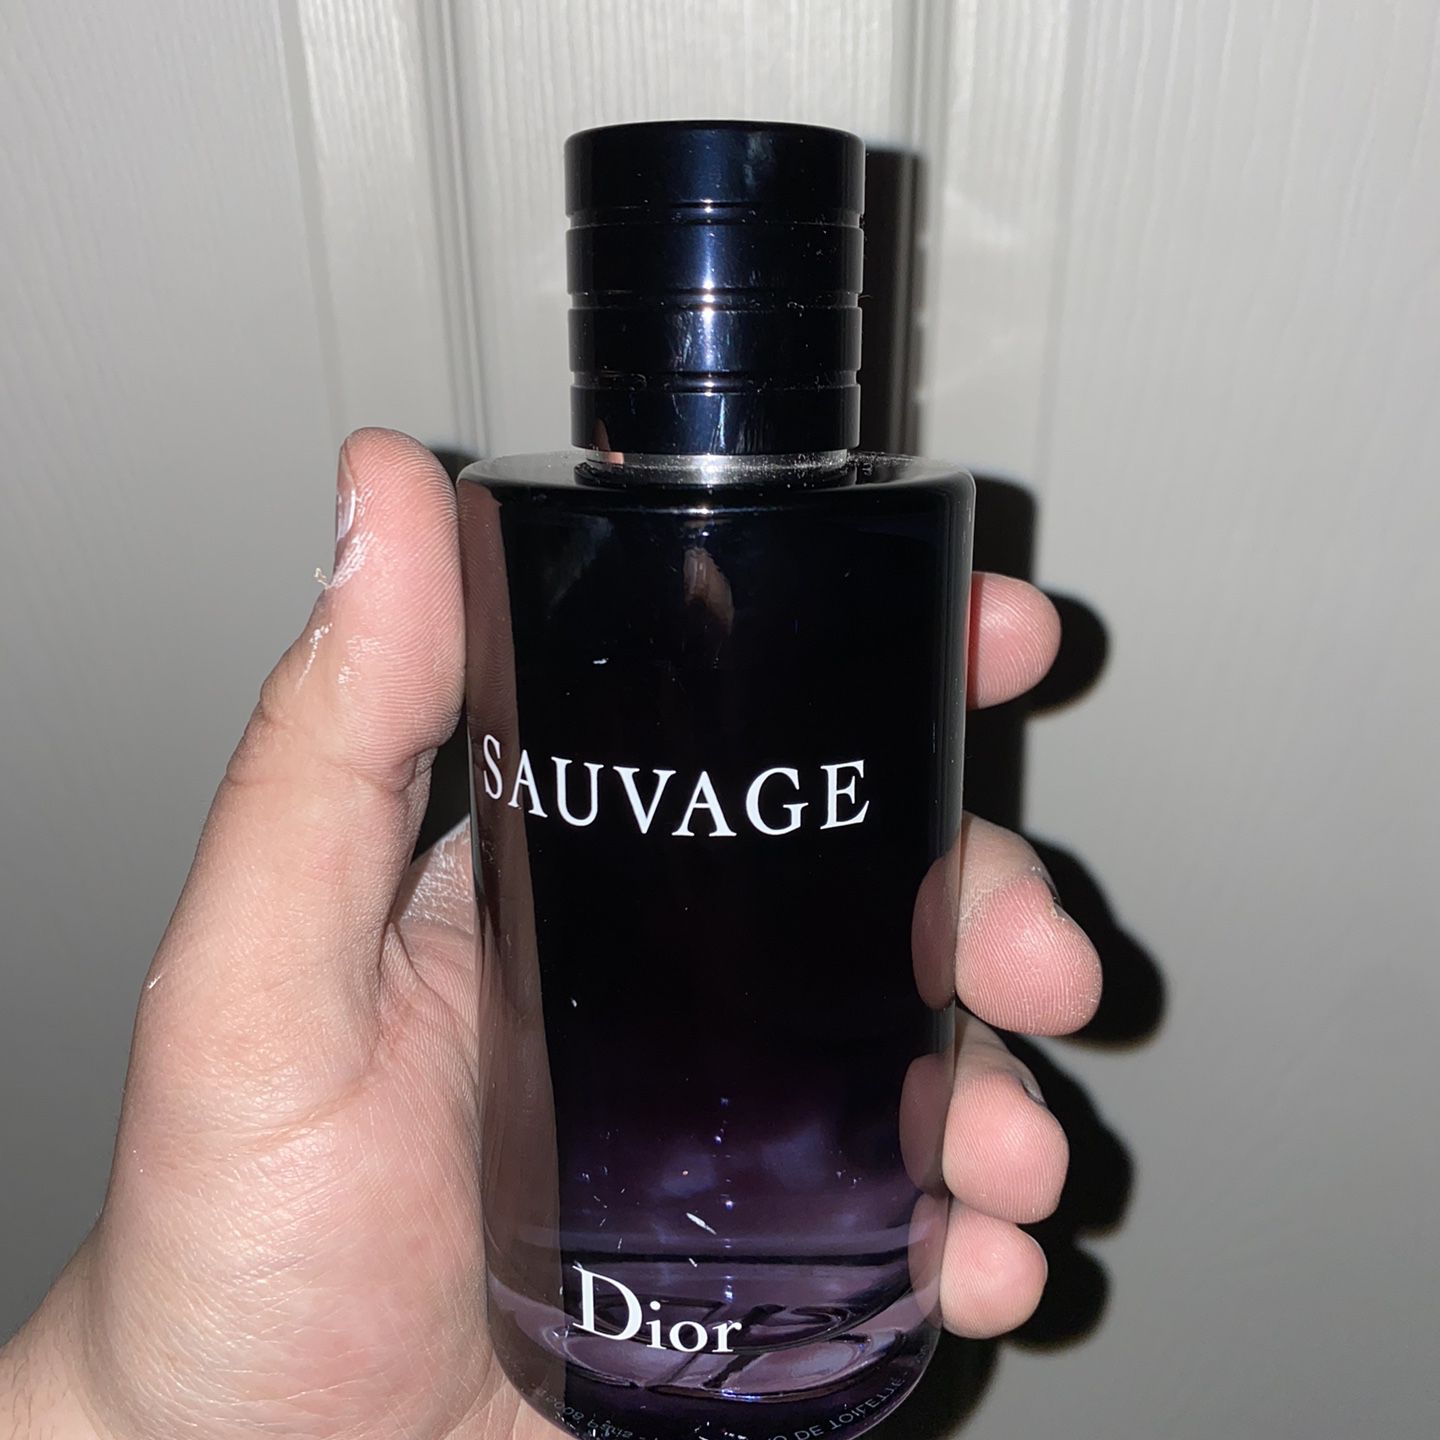 Dior Sauvage Cologne for Sale in Modesto, CA - OfferUp